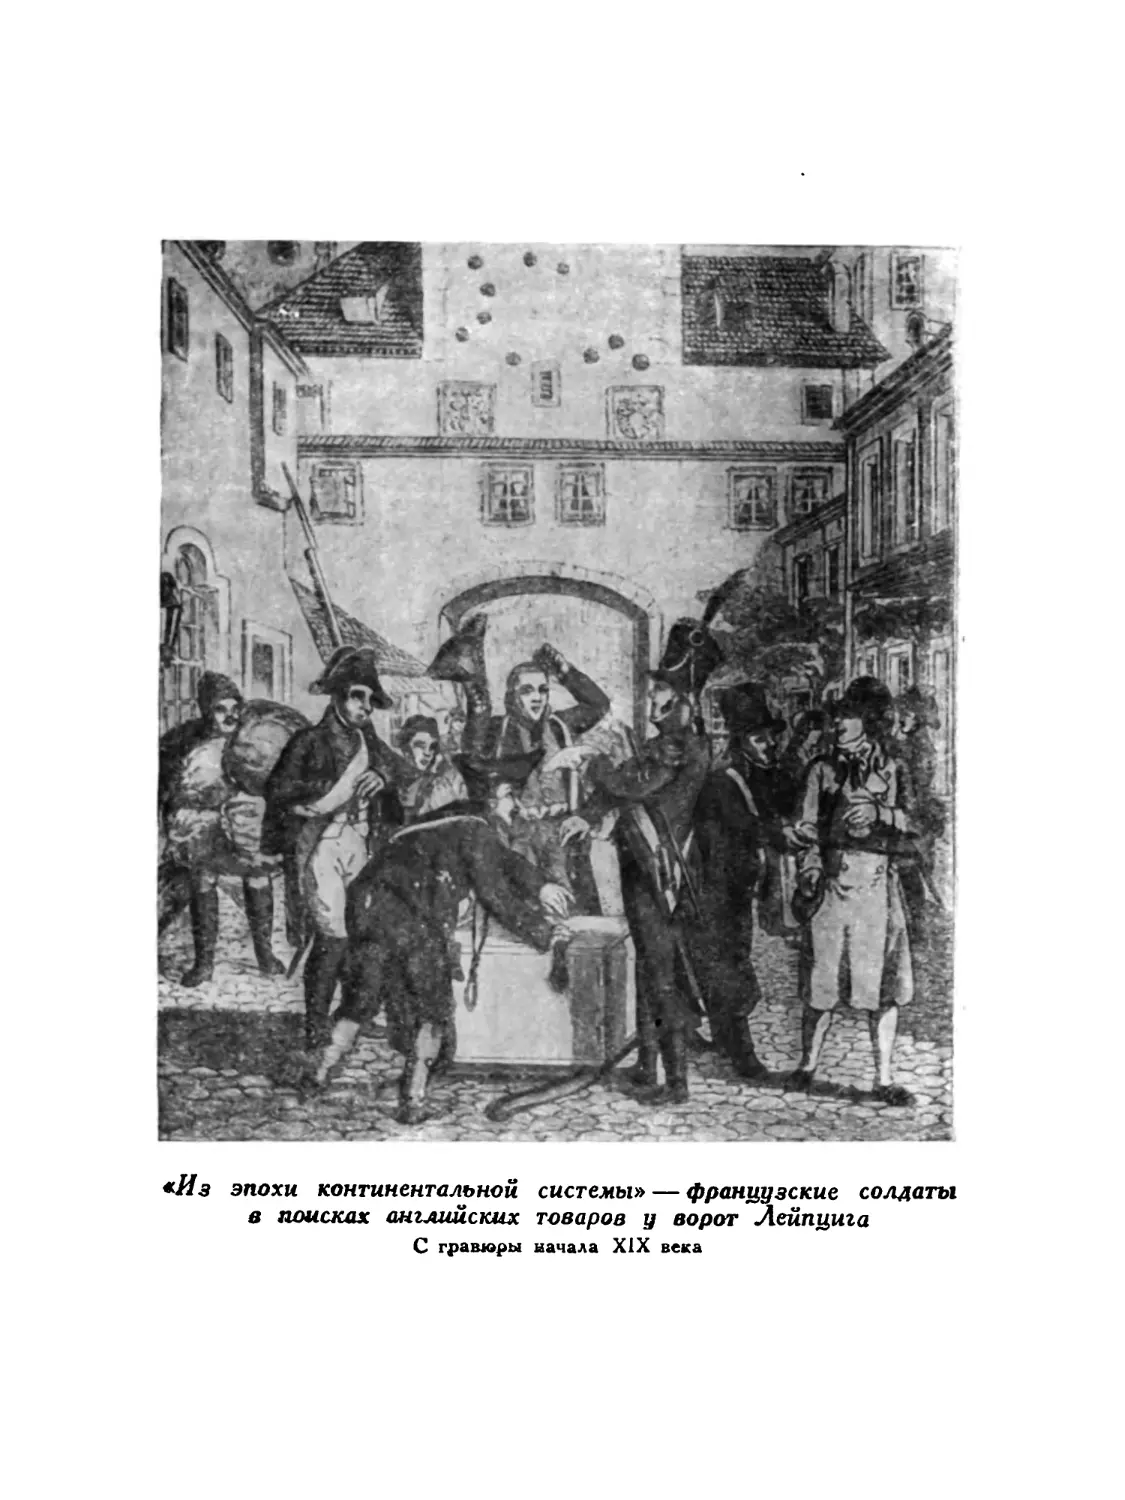 Вклейка. «Из эпохи континентальной системы» — французские солдаты в поисках английских товаров у ворот Лейпцига